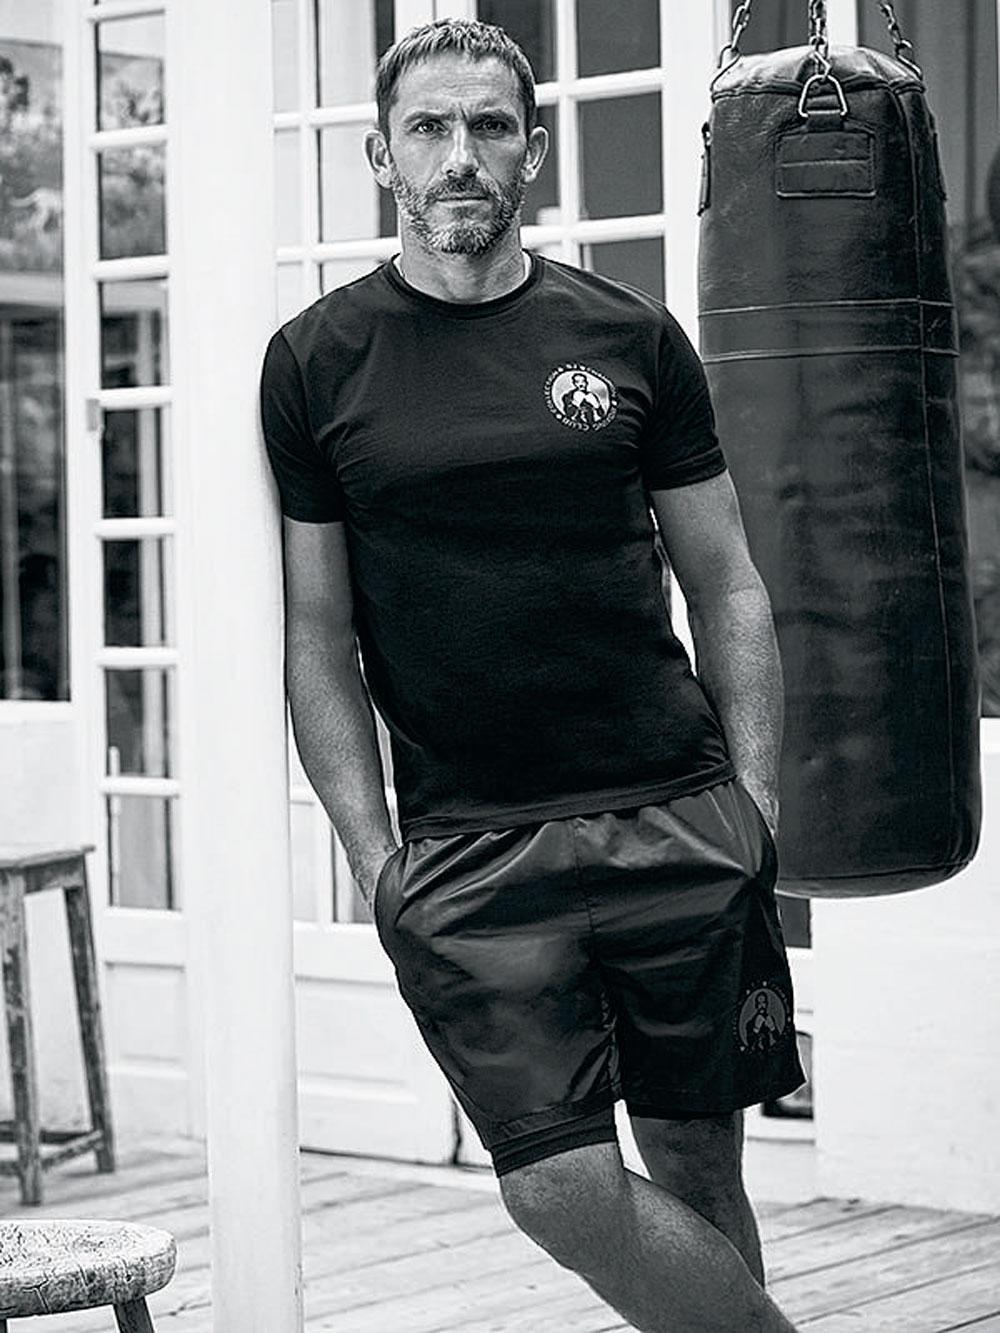 Voor zijn tweede collectie vond Sébastien Jondeau inspiratie in zijn favoriete sport: boksen.